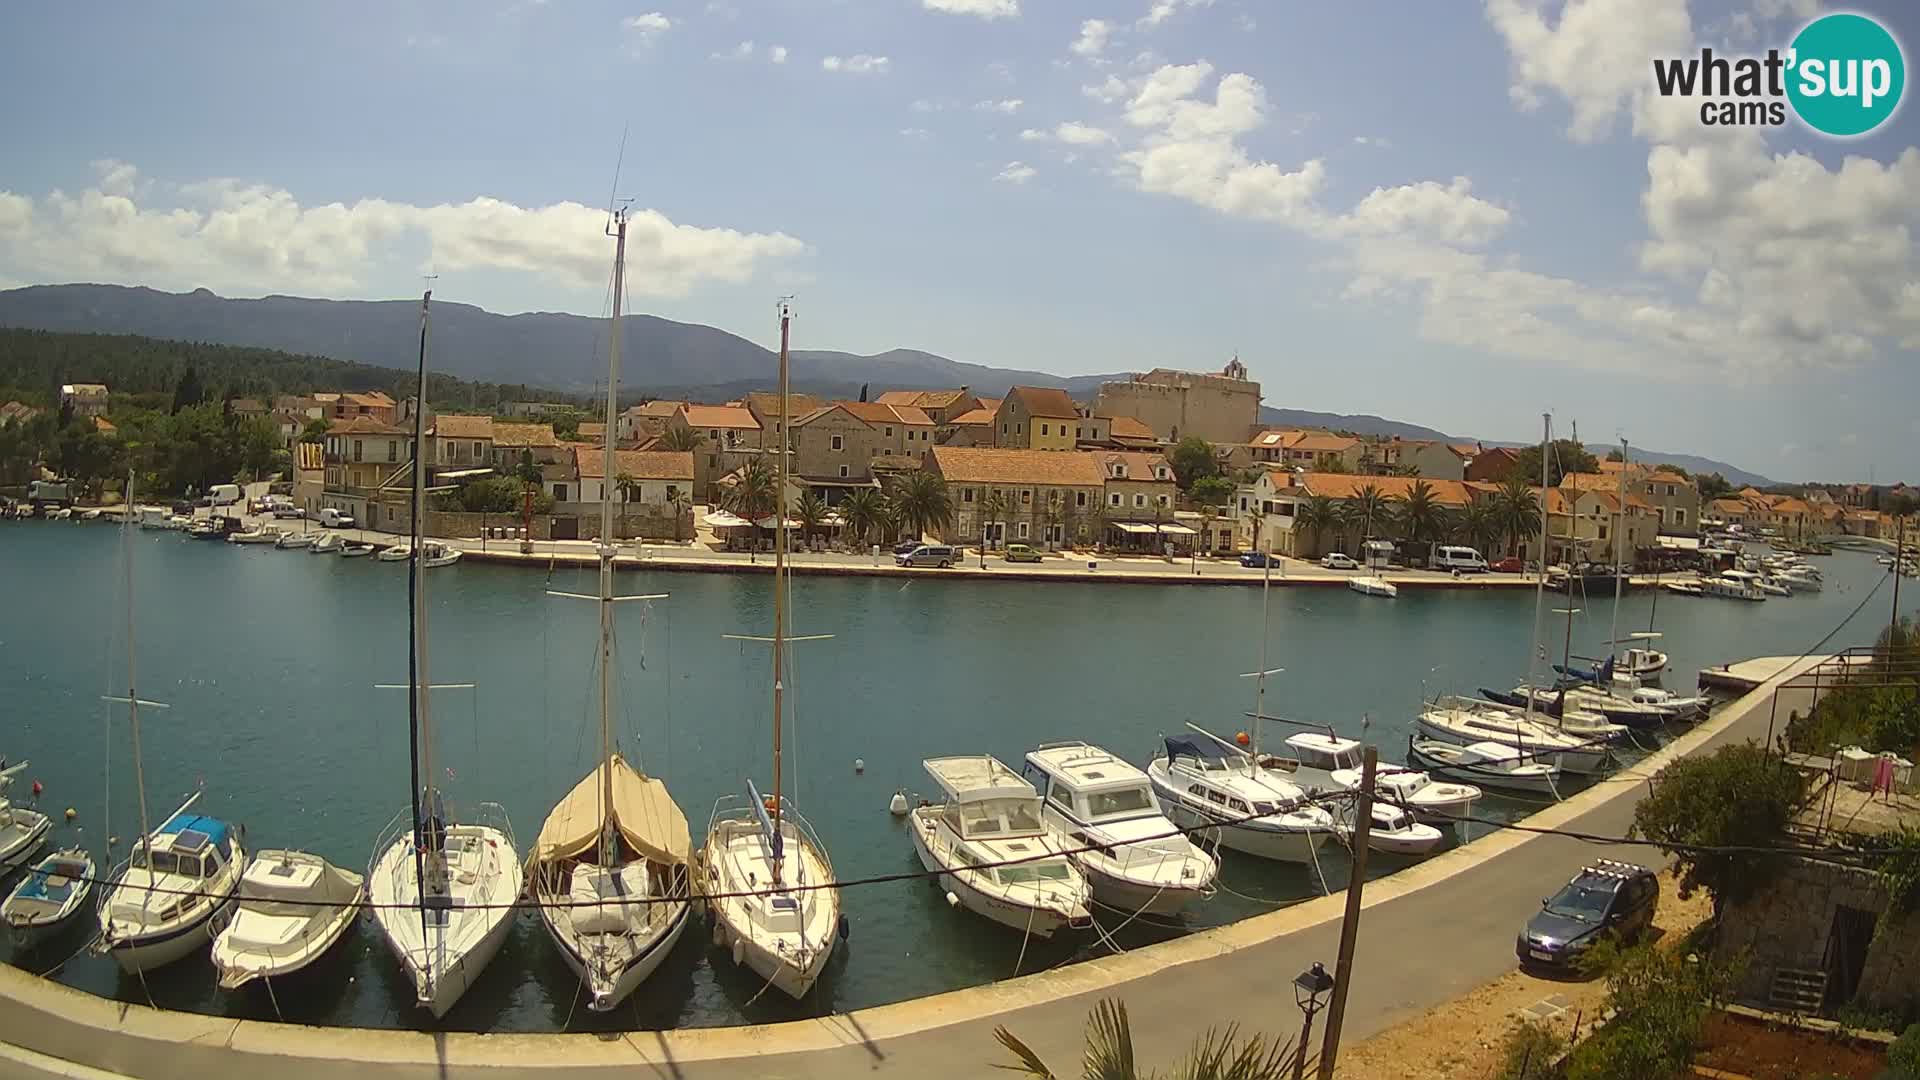 Live webcam Vrboska – Isola di Hvar – Dalmazia – Croazia